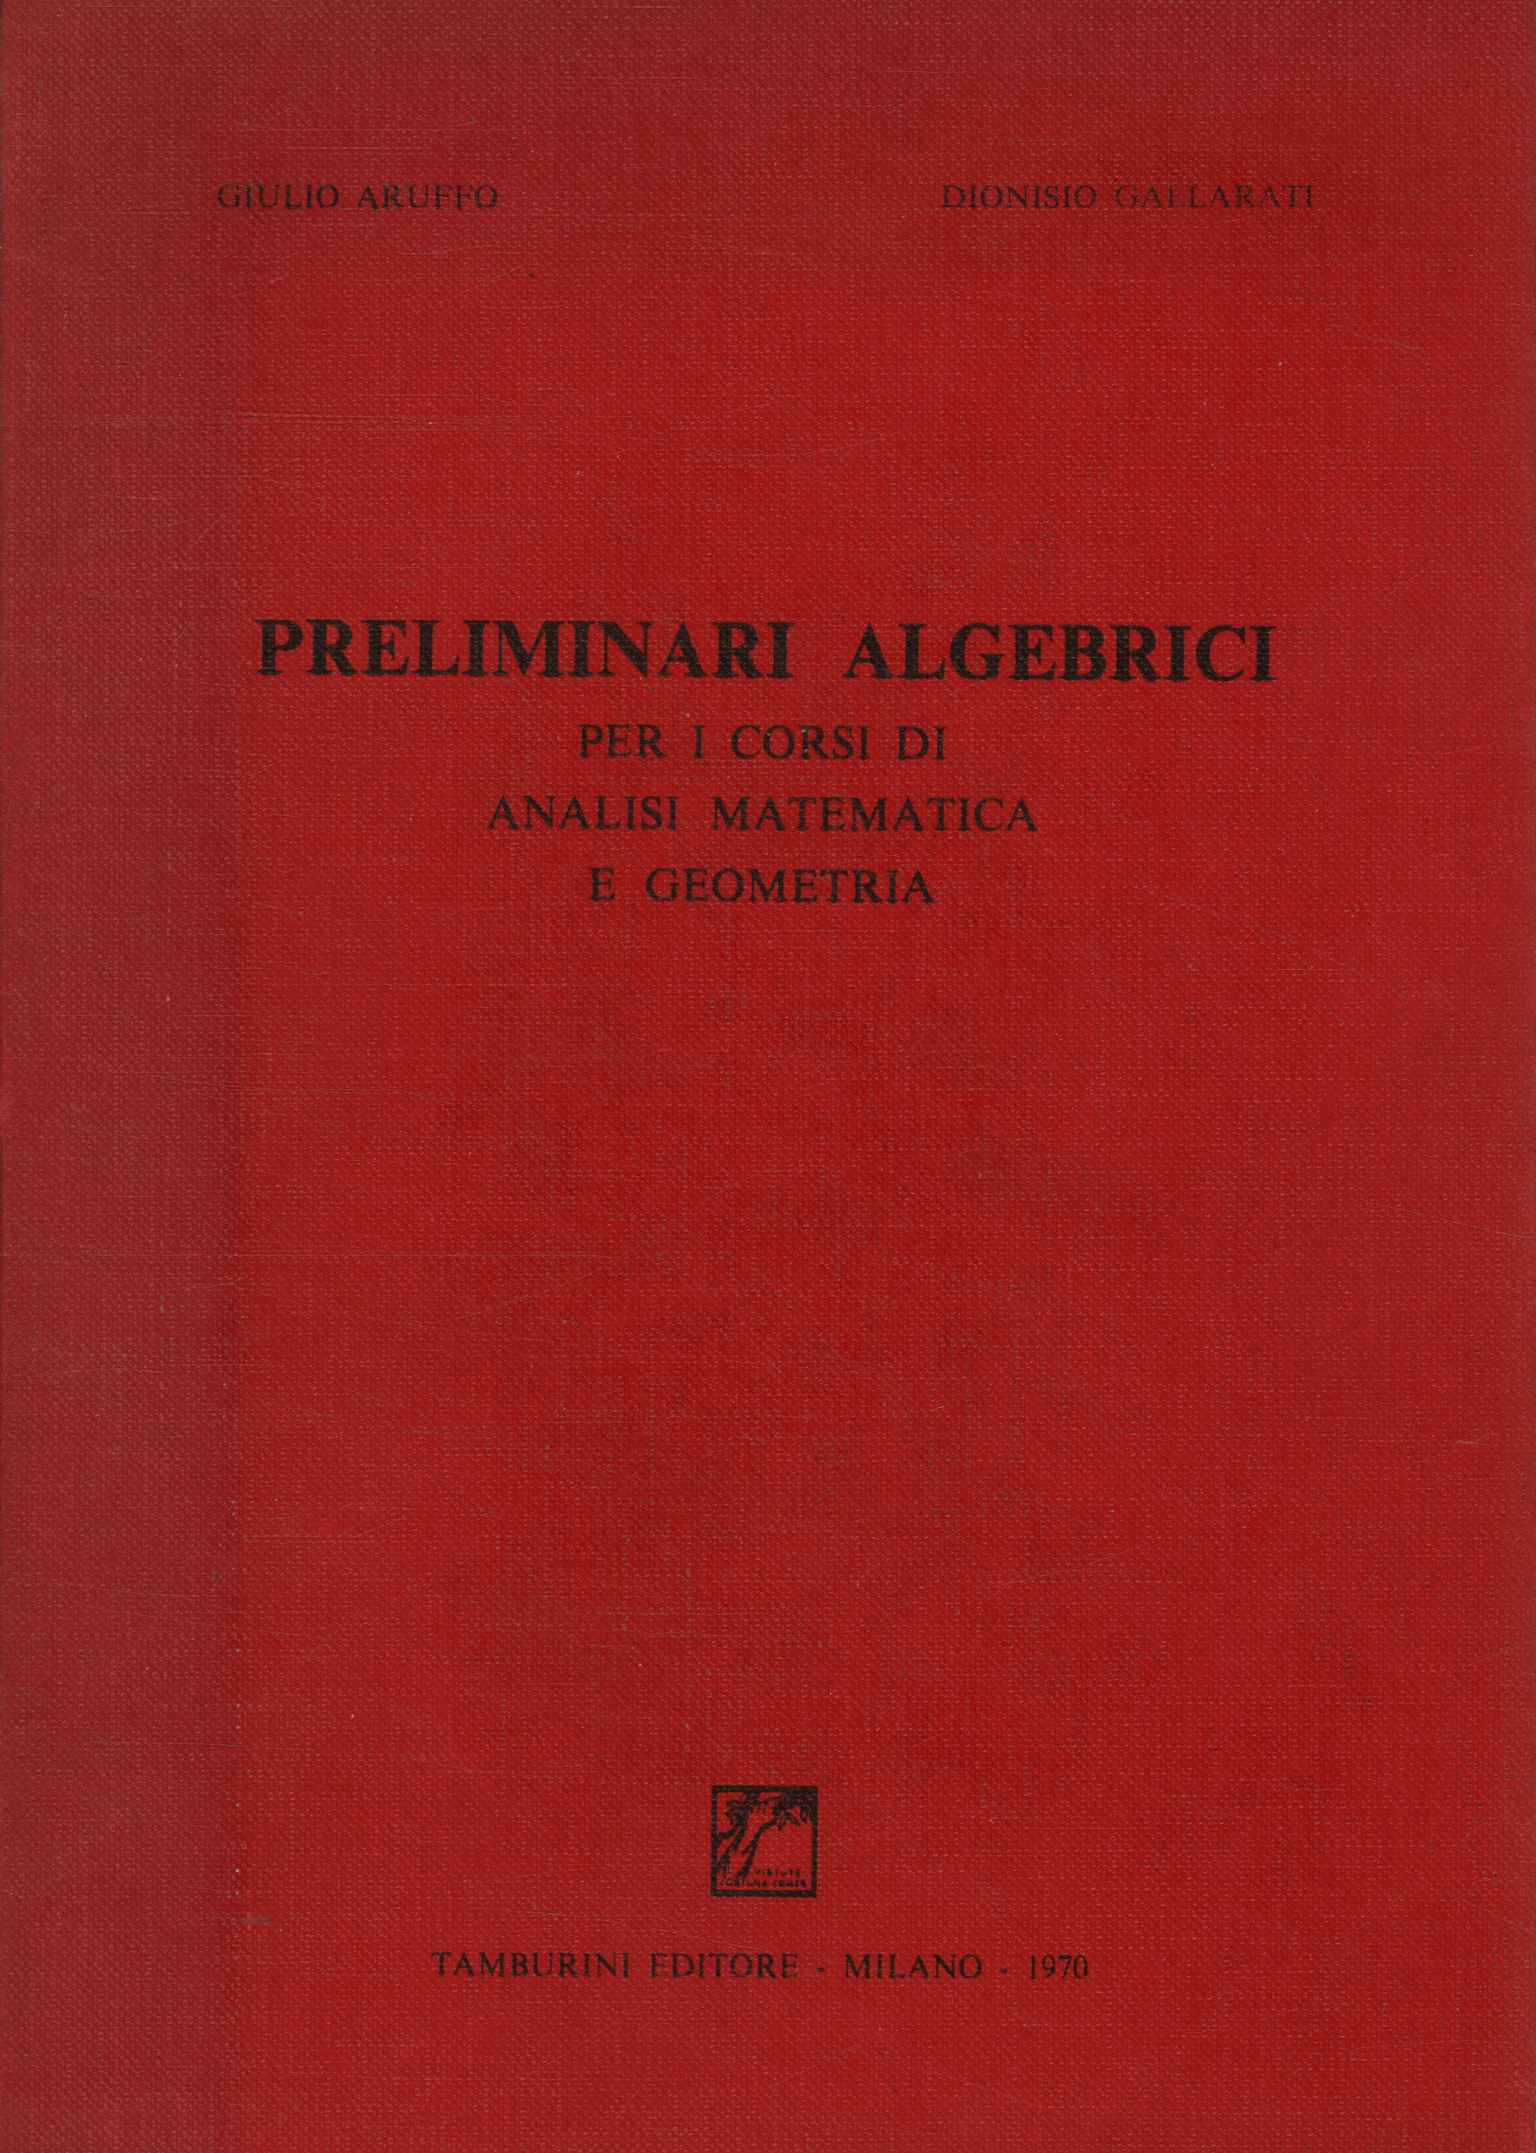 Preliminares algebraicos